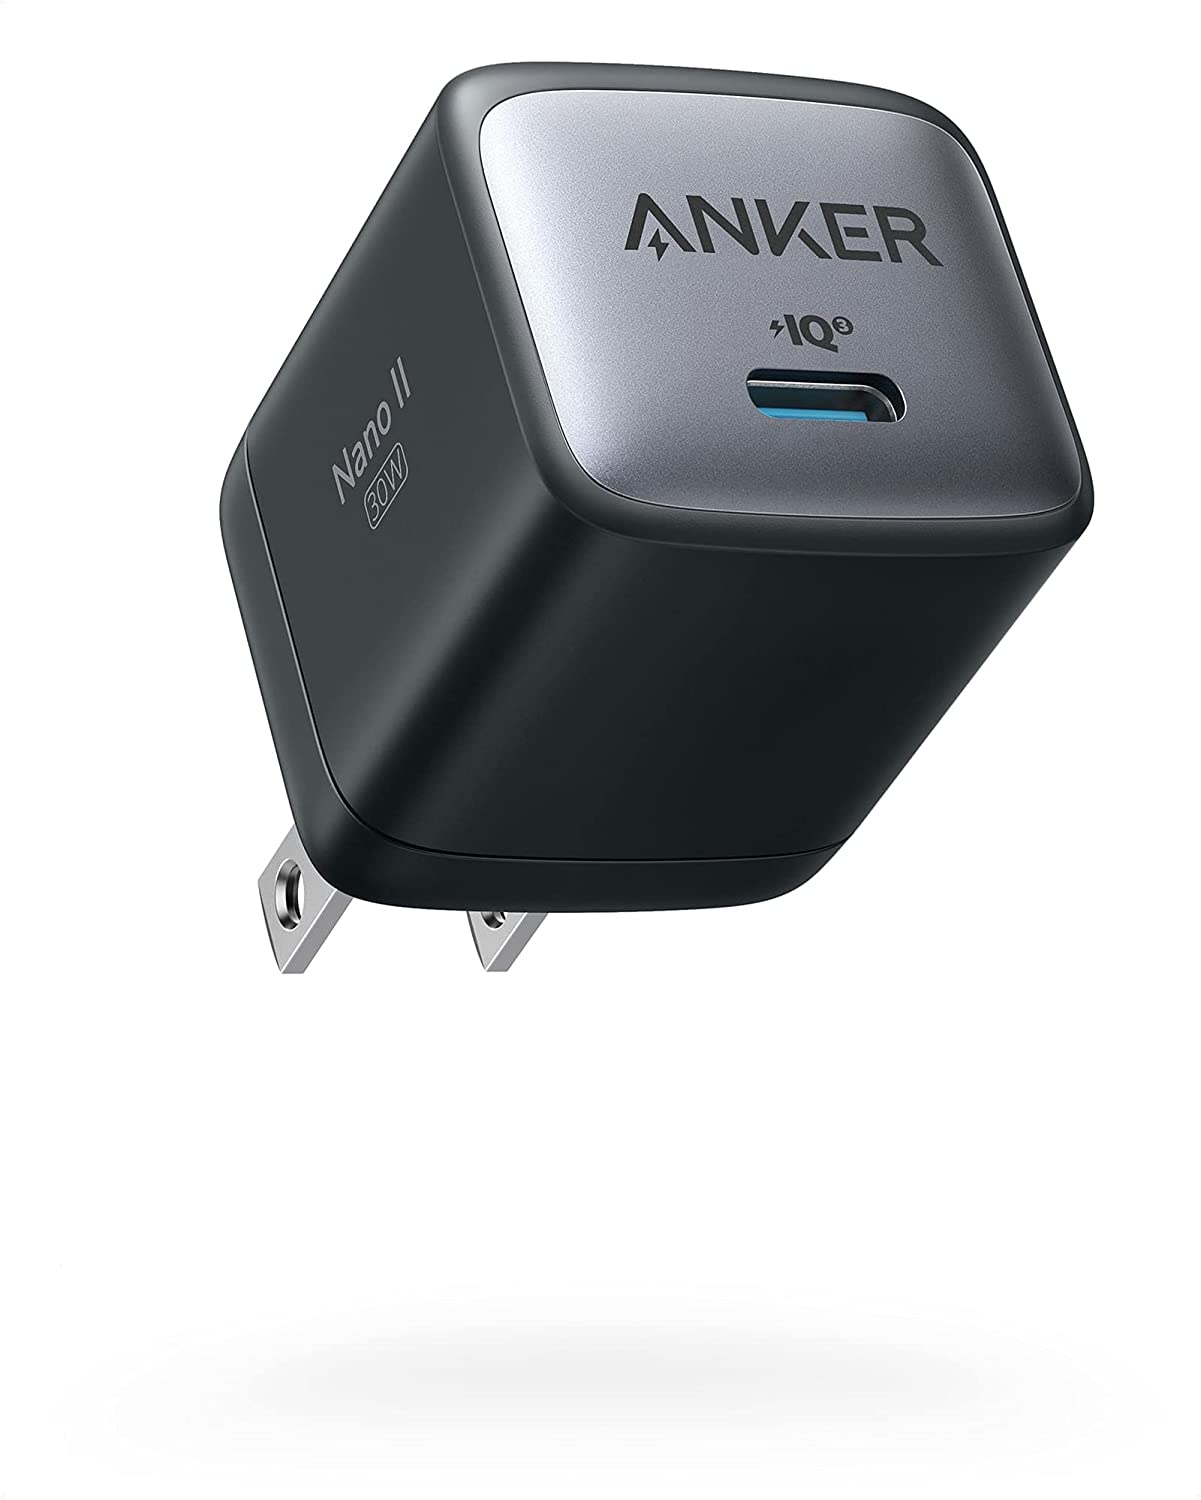 Anker Nano II Charger